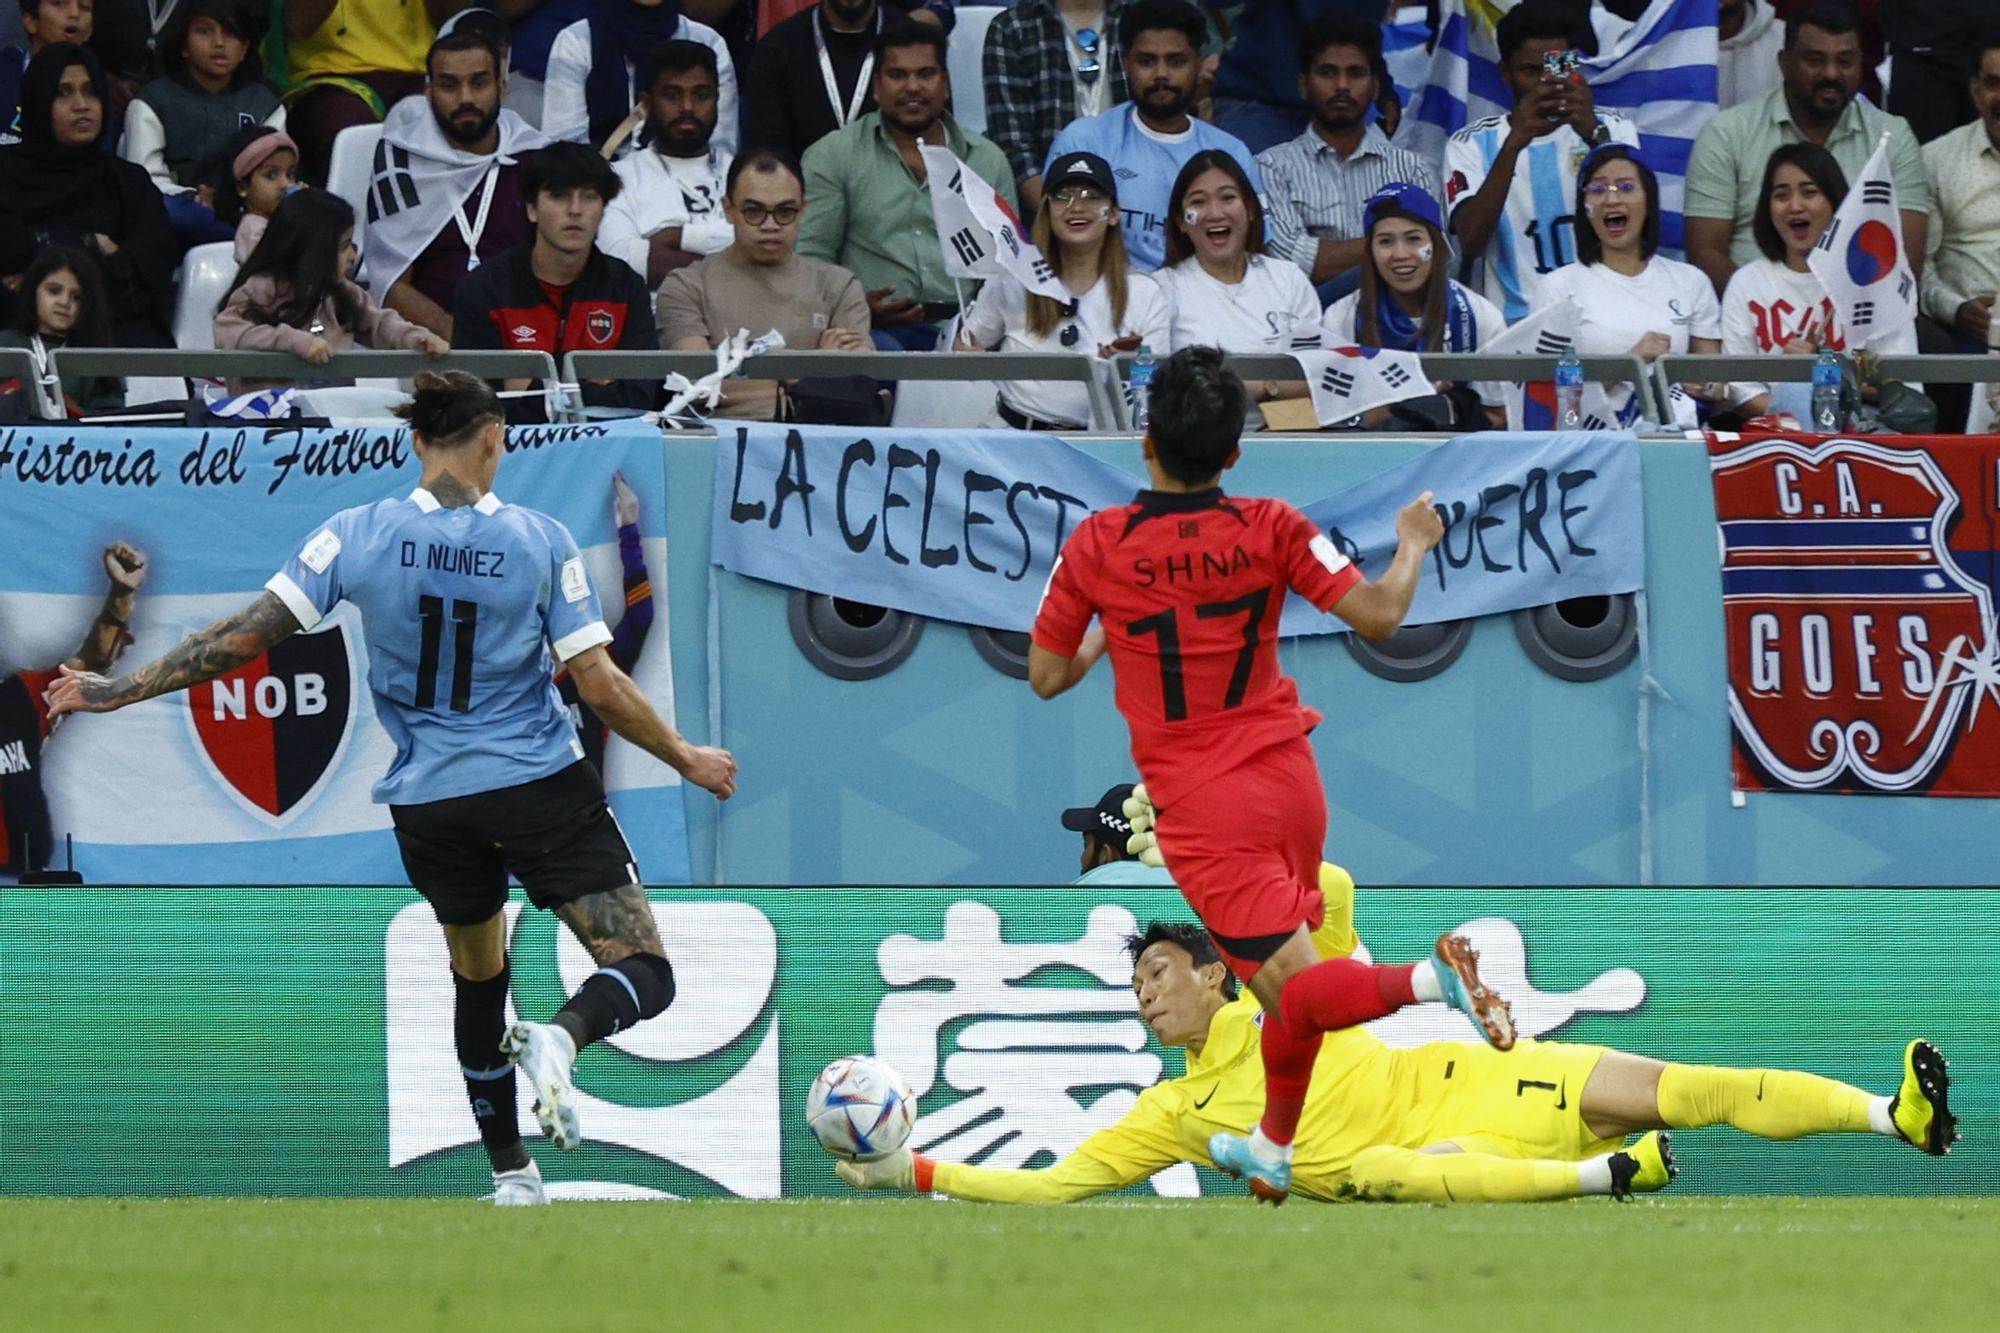 Mundial de Fútbol: Uruguay - Corea del Sur